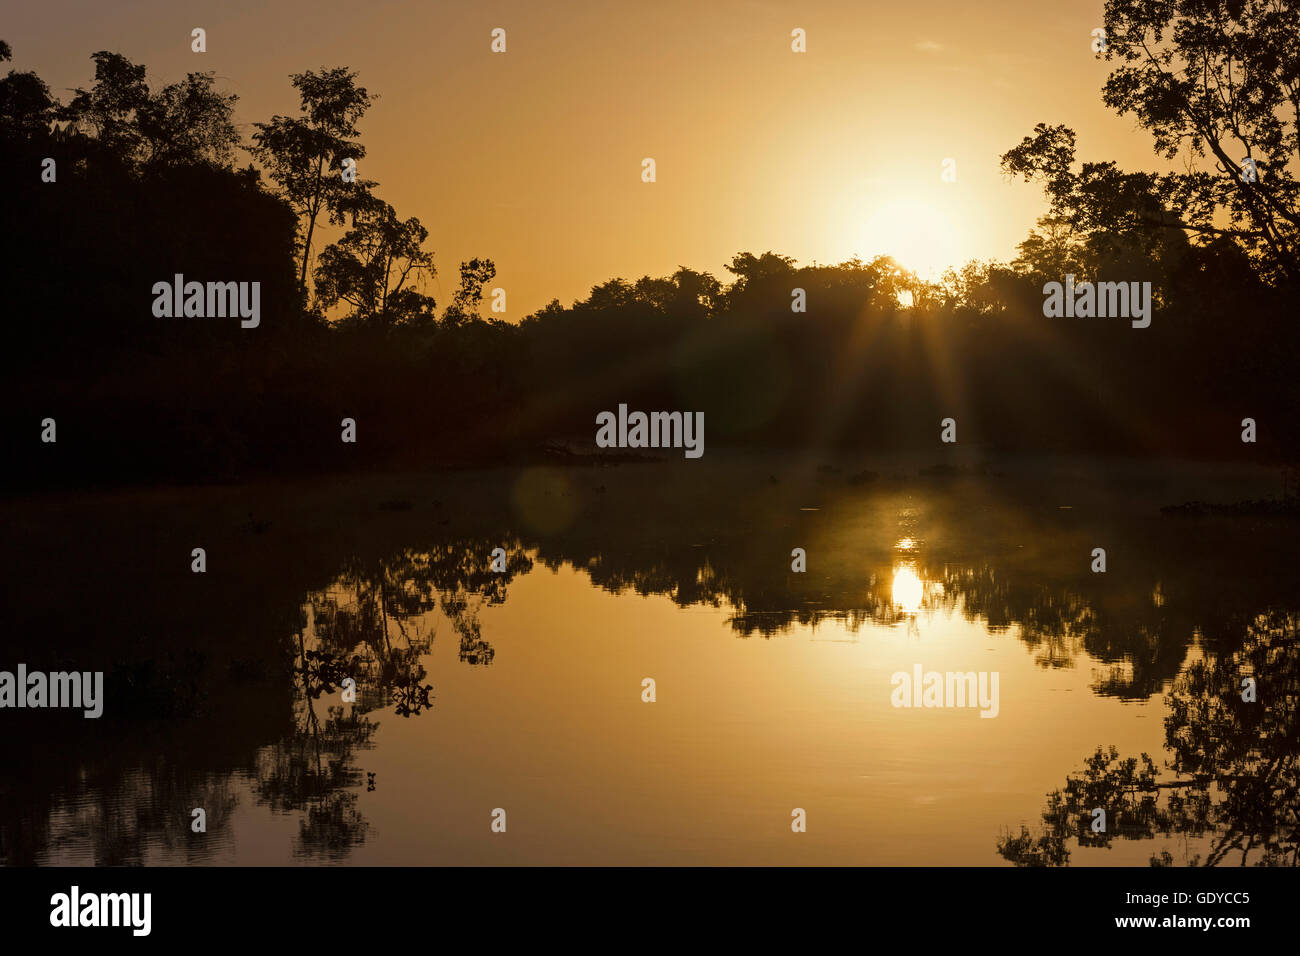 Scenic view of sunrise over river, Orinoco River, Orinoco Delta, Venezuela Stock Photo